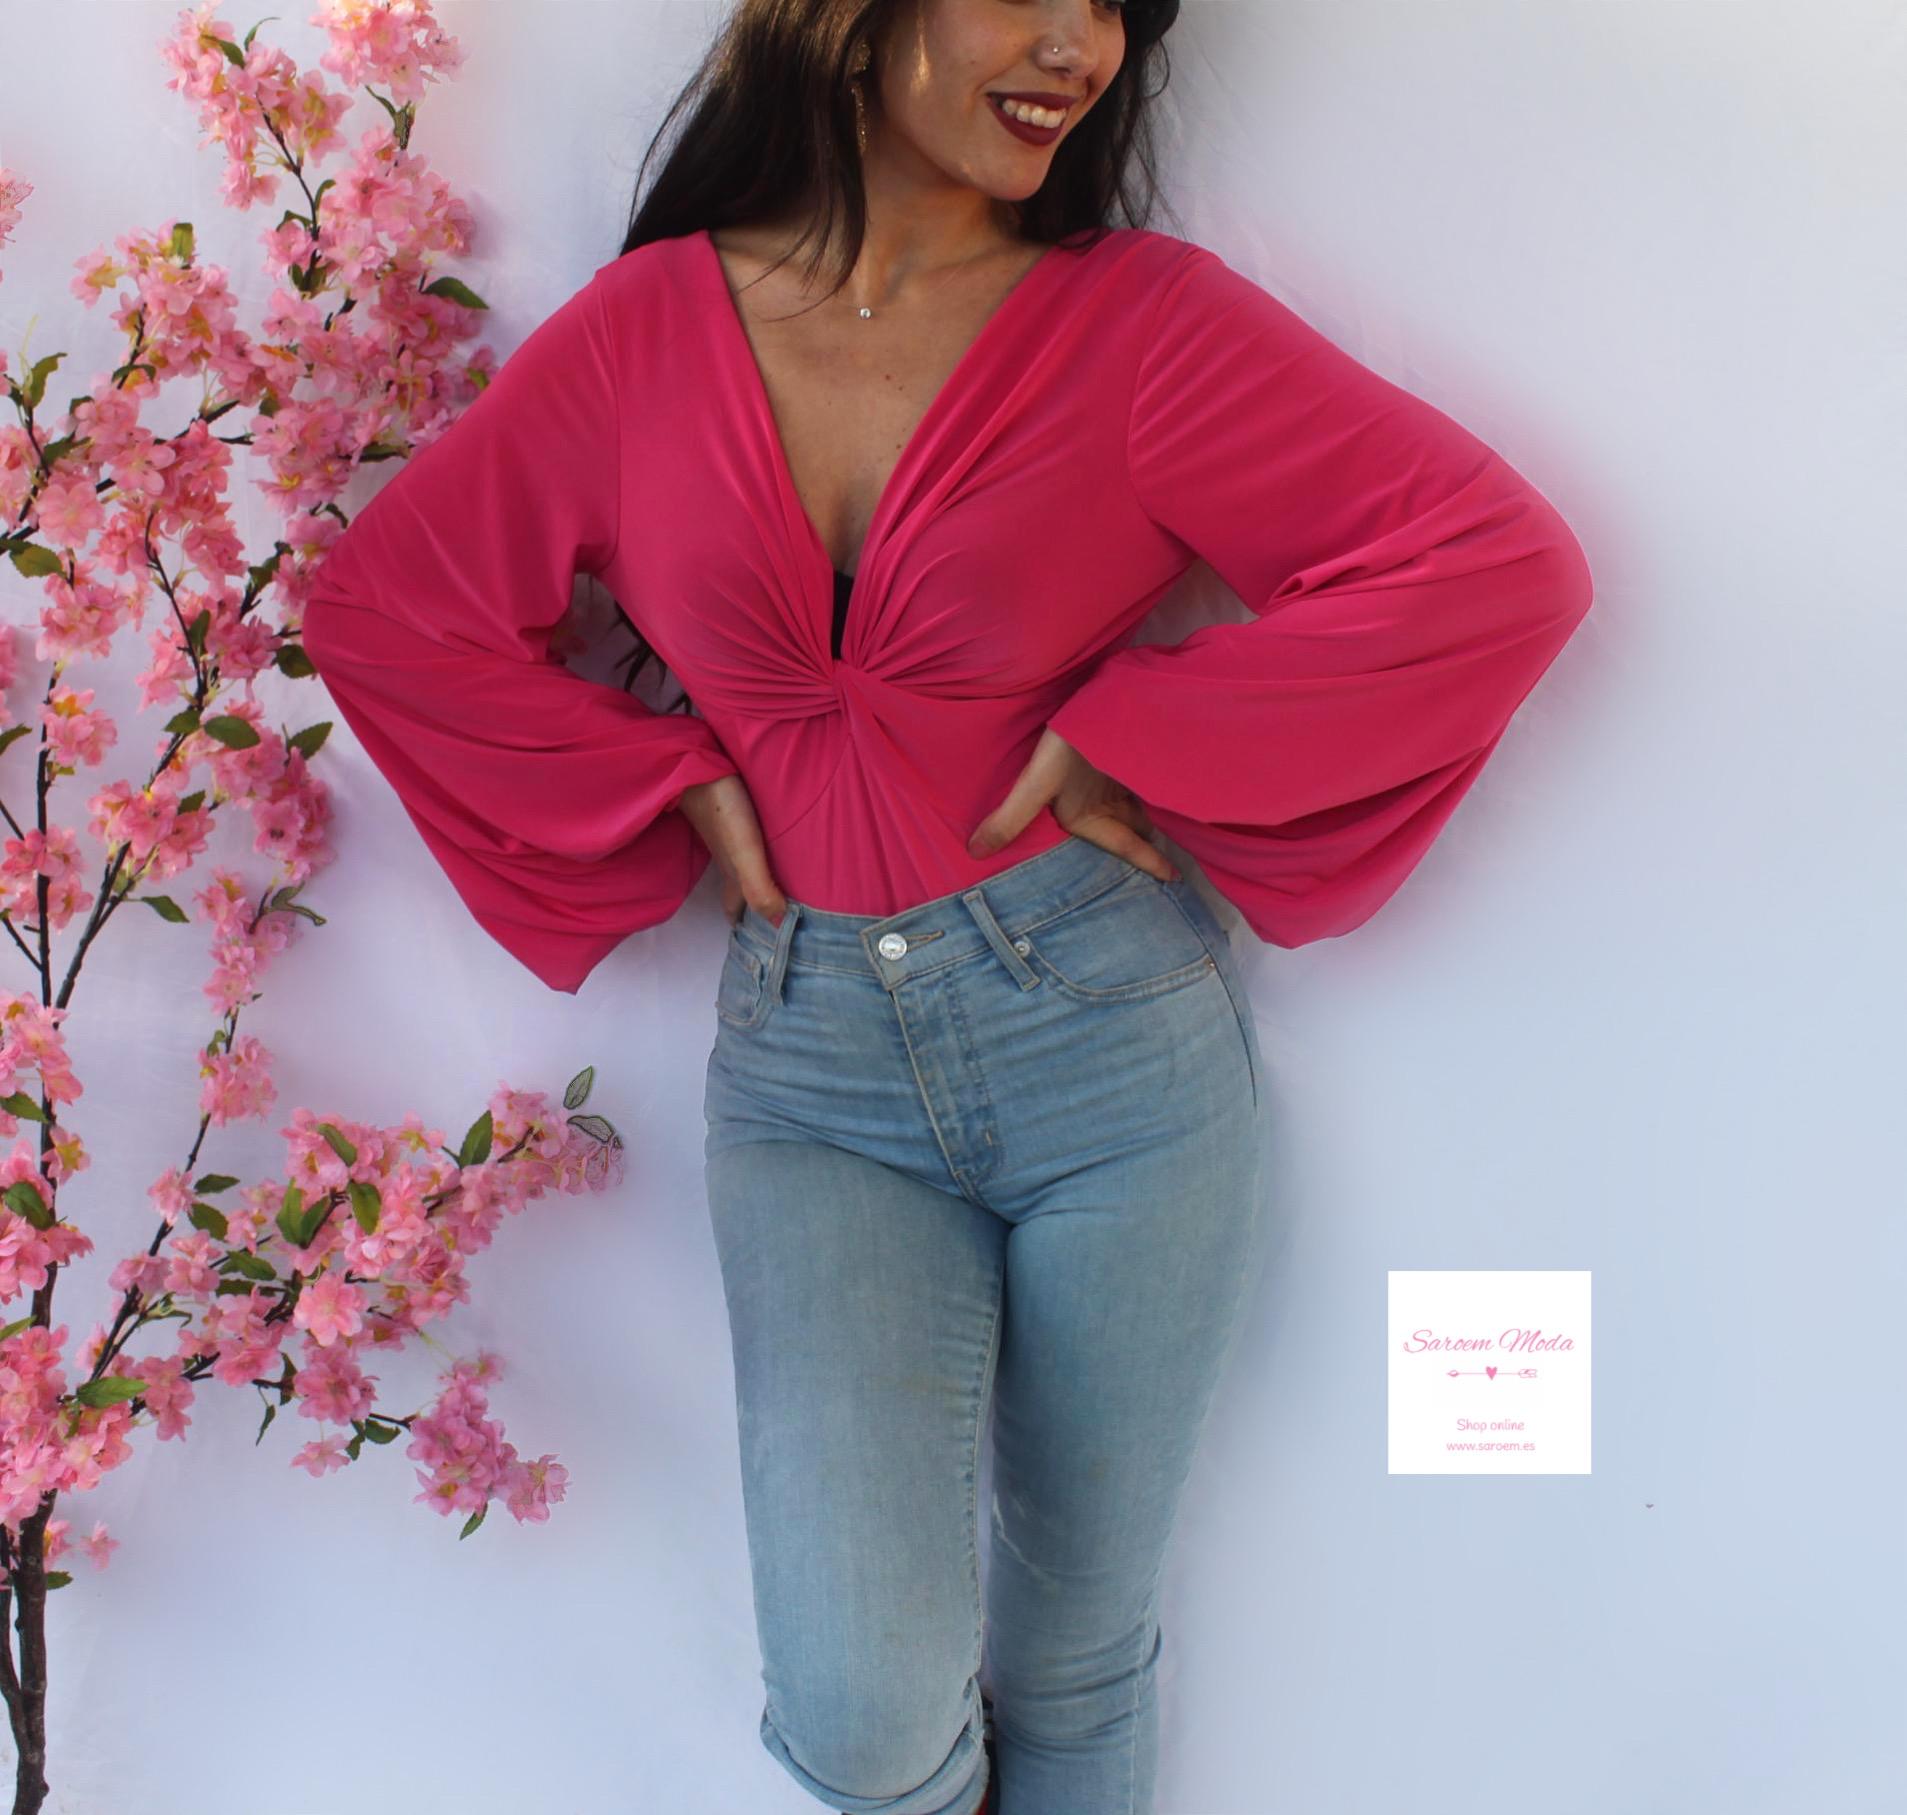 Saroem - 💖💖💖 ▪️ Jersey Ochos fucsia disponible en la web 😍🤤  ✨www.saroem.es✨ #saroem #saroemmoda #compras #outfit #look #moda #ropa  #tienda #mujer #españa #modamujer #trendy #trend #tendencias #fashion  #style #shopping #modafemenina